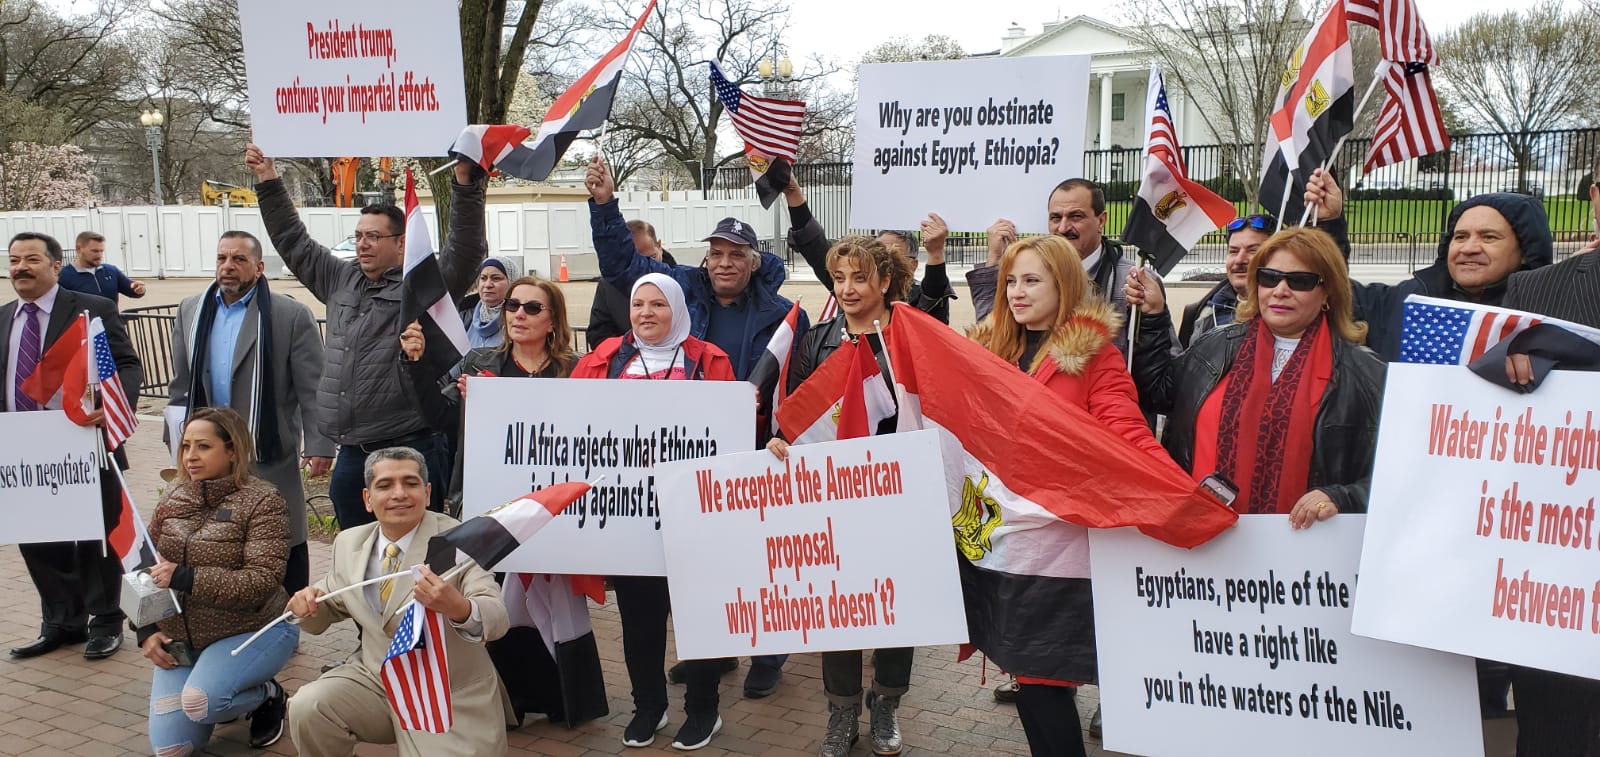   بالصور|| الجالية المصرية في واشنطن تحتشد أمام البيت الأبيض دعمًا لمصر فى مفاوضات سد النهضة